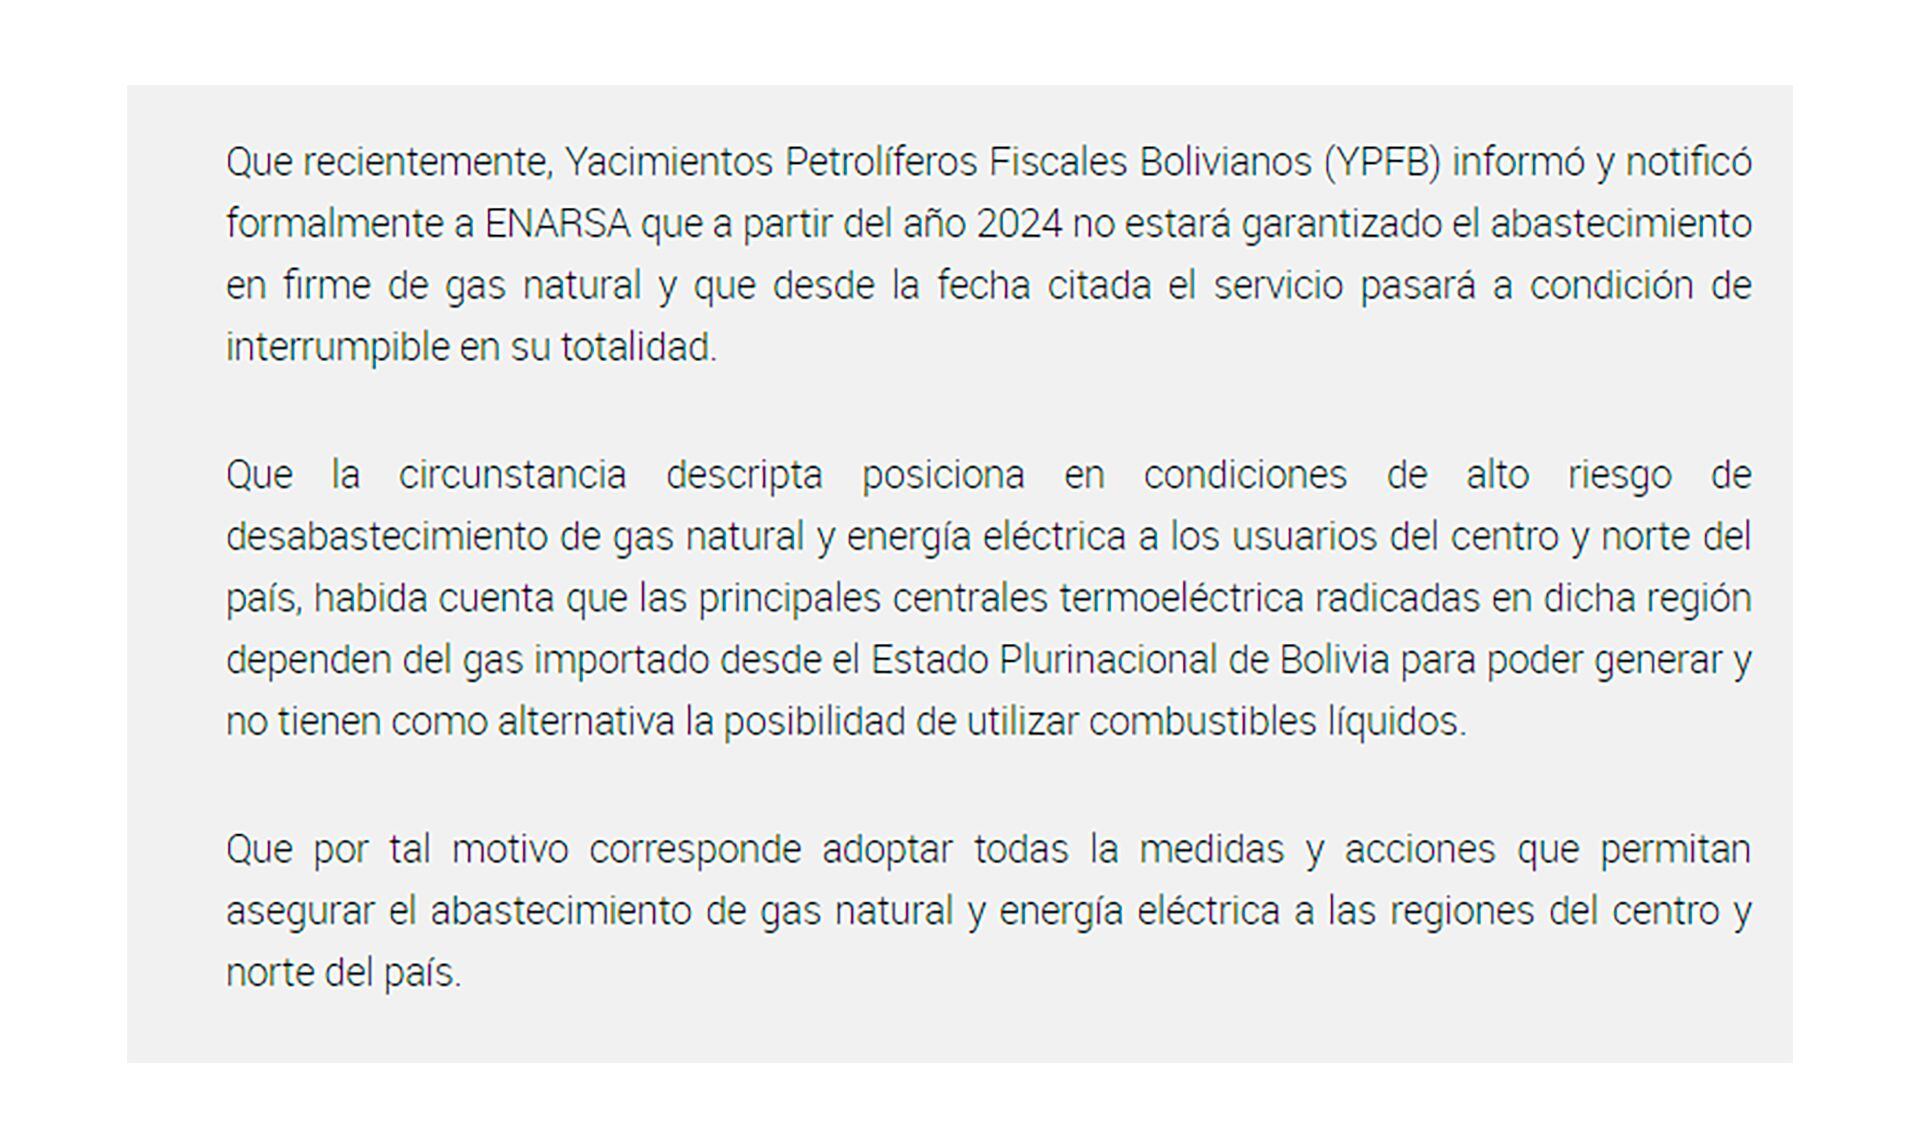 Bolivia Gas YPFB Royón Energía